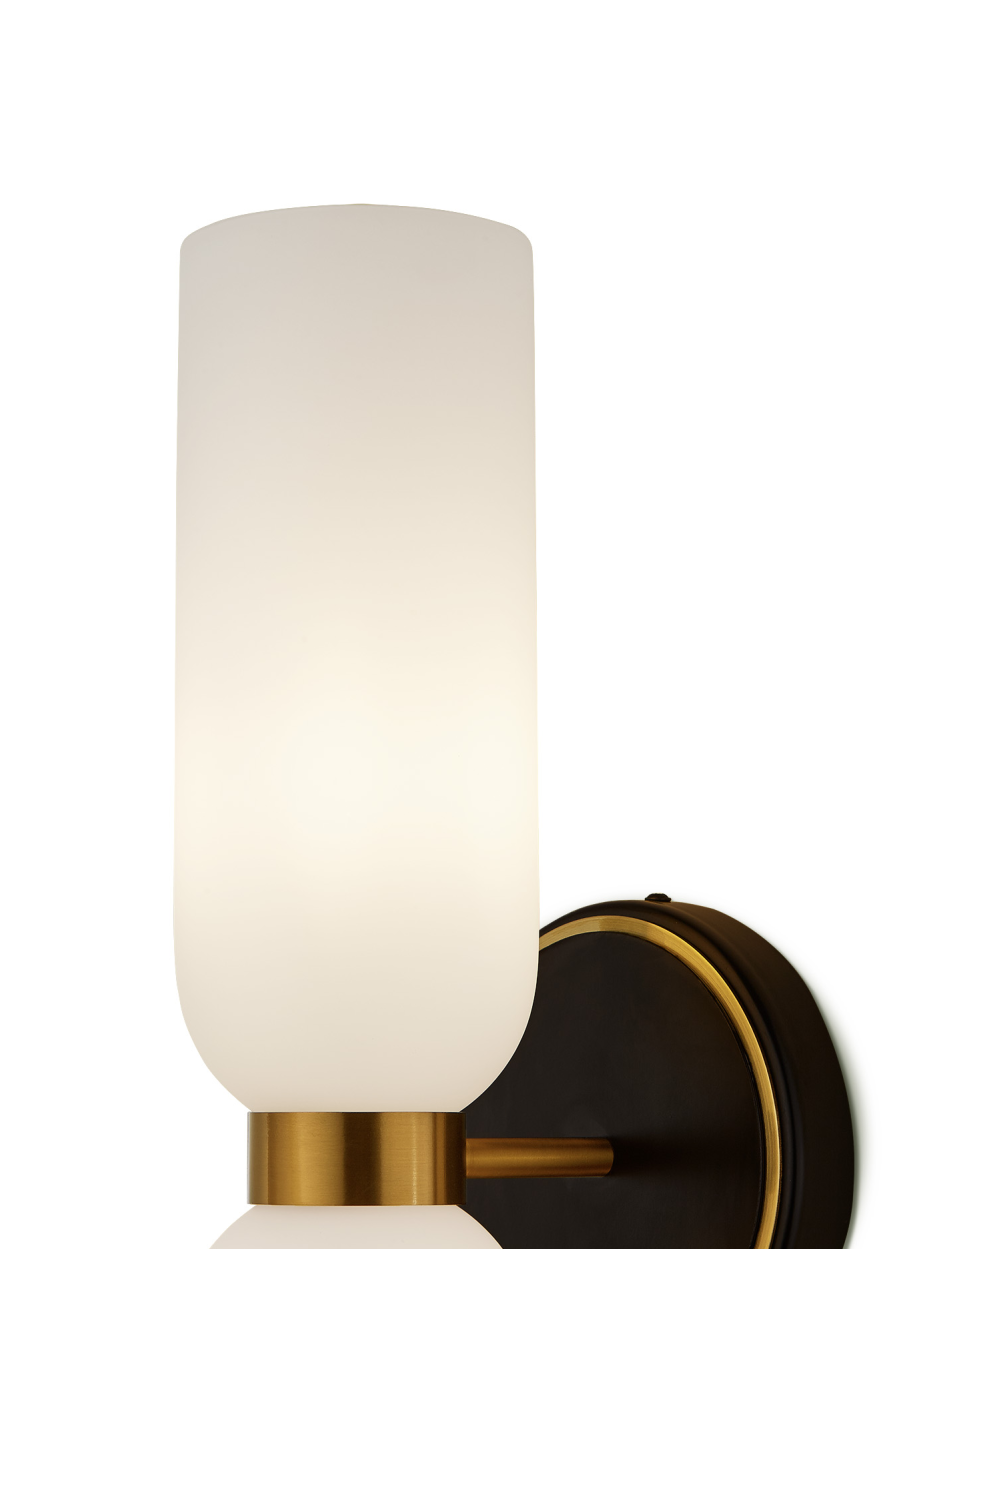 White Hourglass Wall Lamp | Liang & Eimil Pawson | Oroa.com